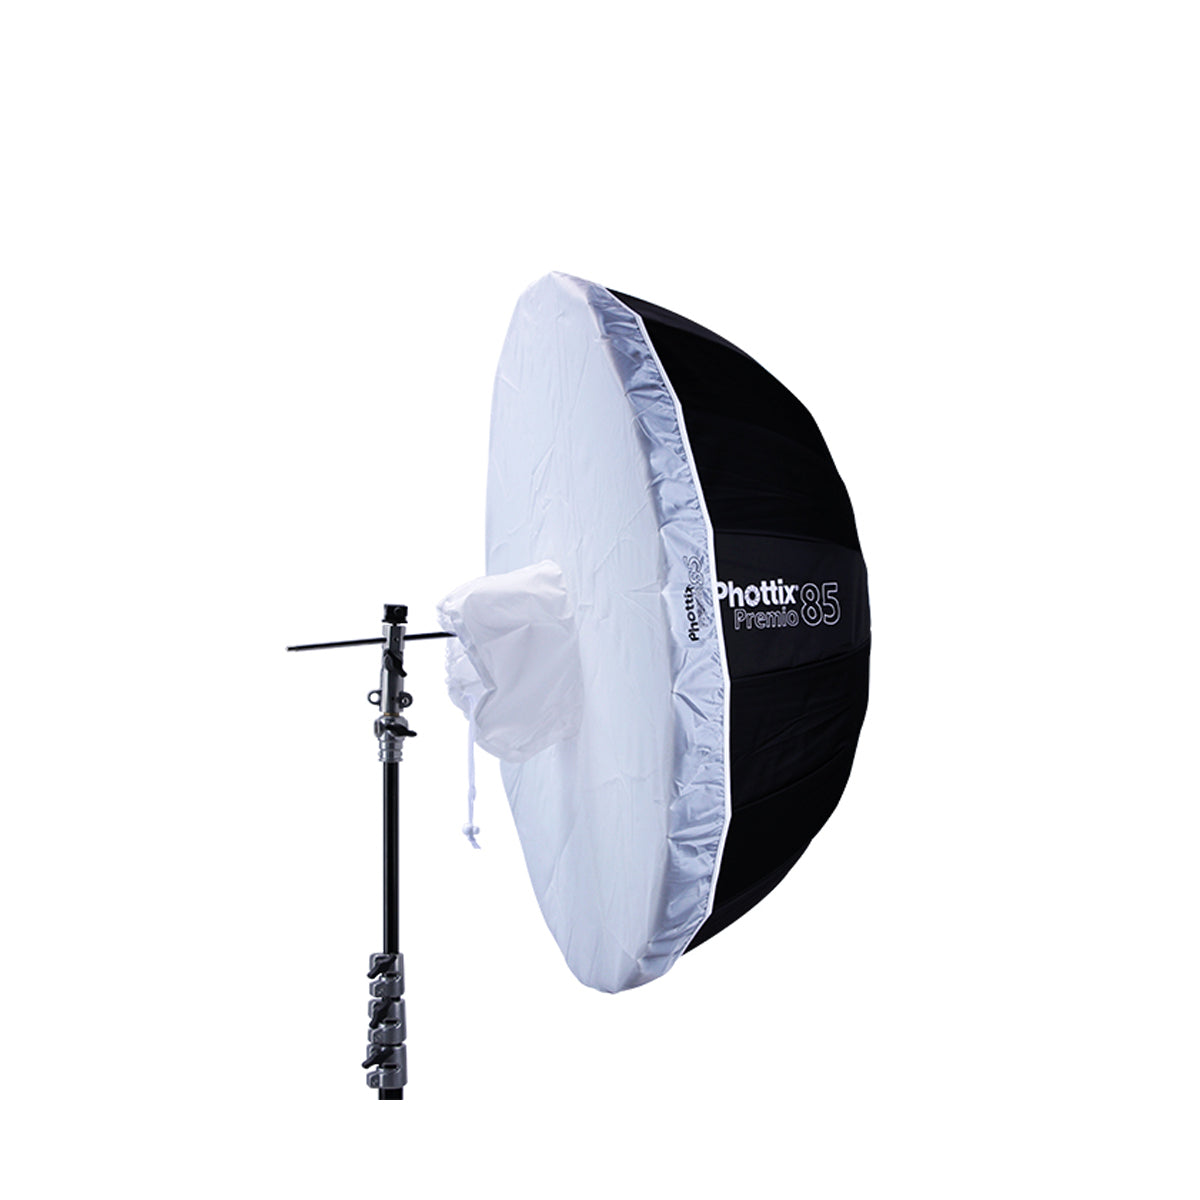 Phottix Premio White Diffuser for 85cm or 33 Inches Reflective Umbrella (DIFFUSER ONLY)